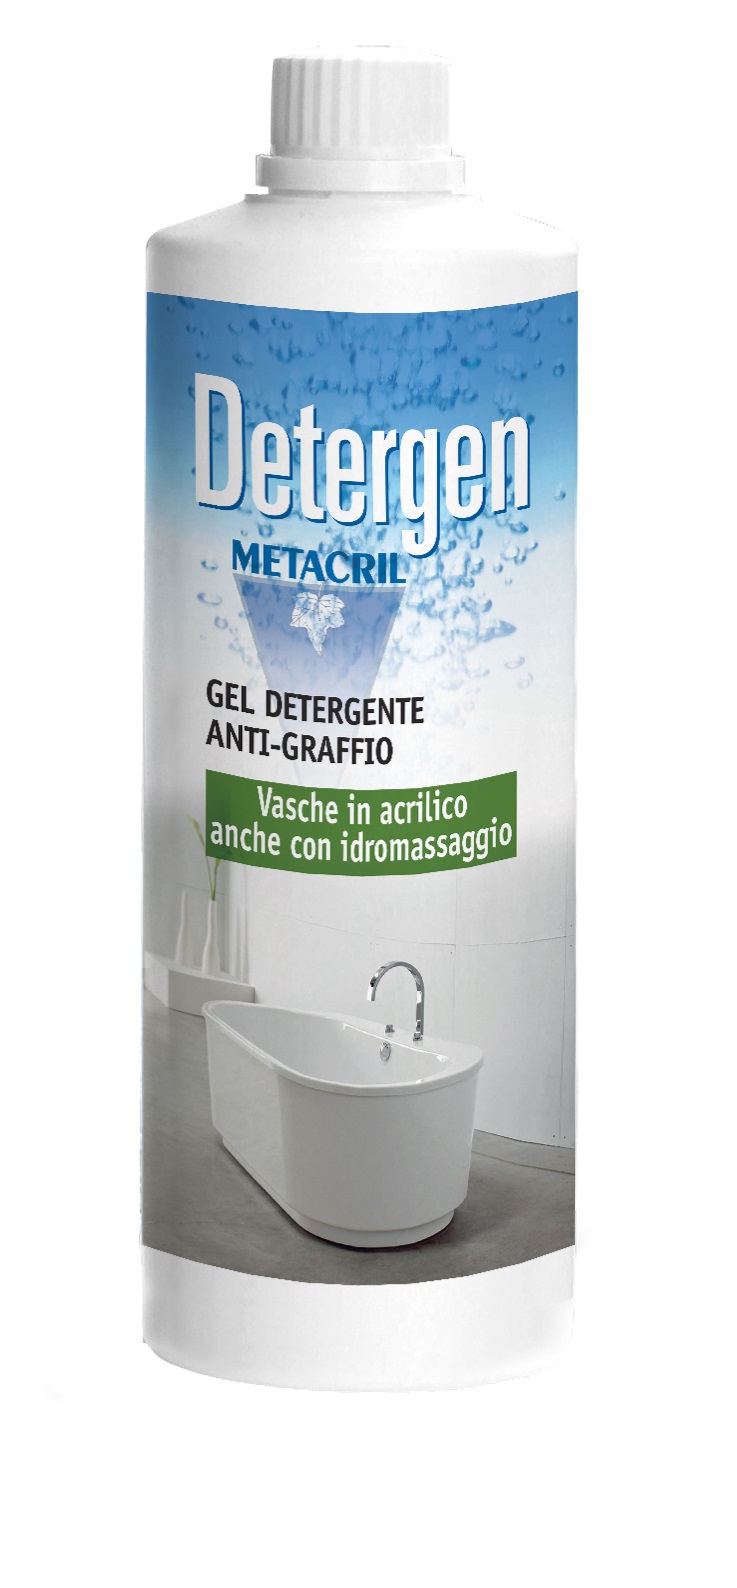 DETERGEN - 1000ml Detergente antigraffio per vasche e superfici acriliche